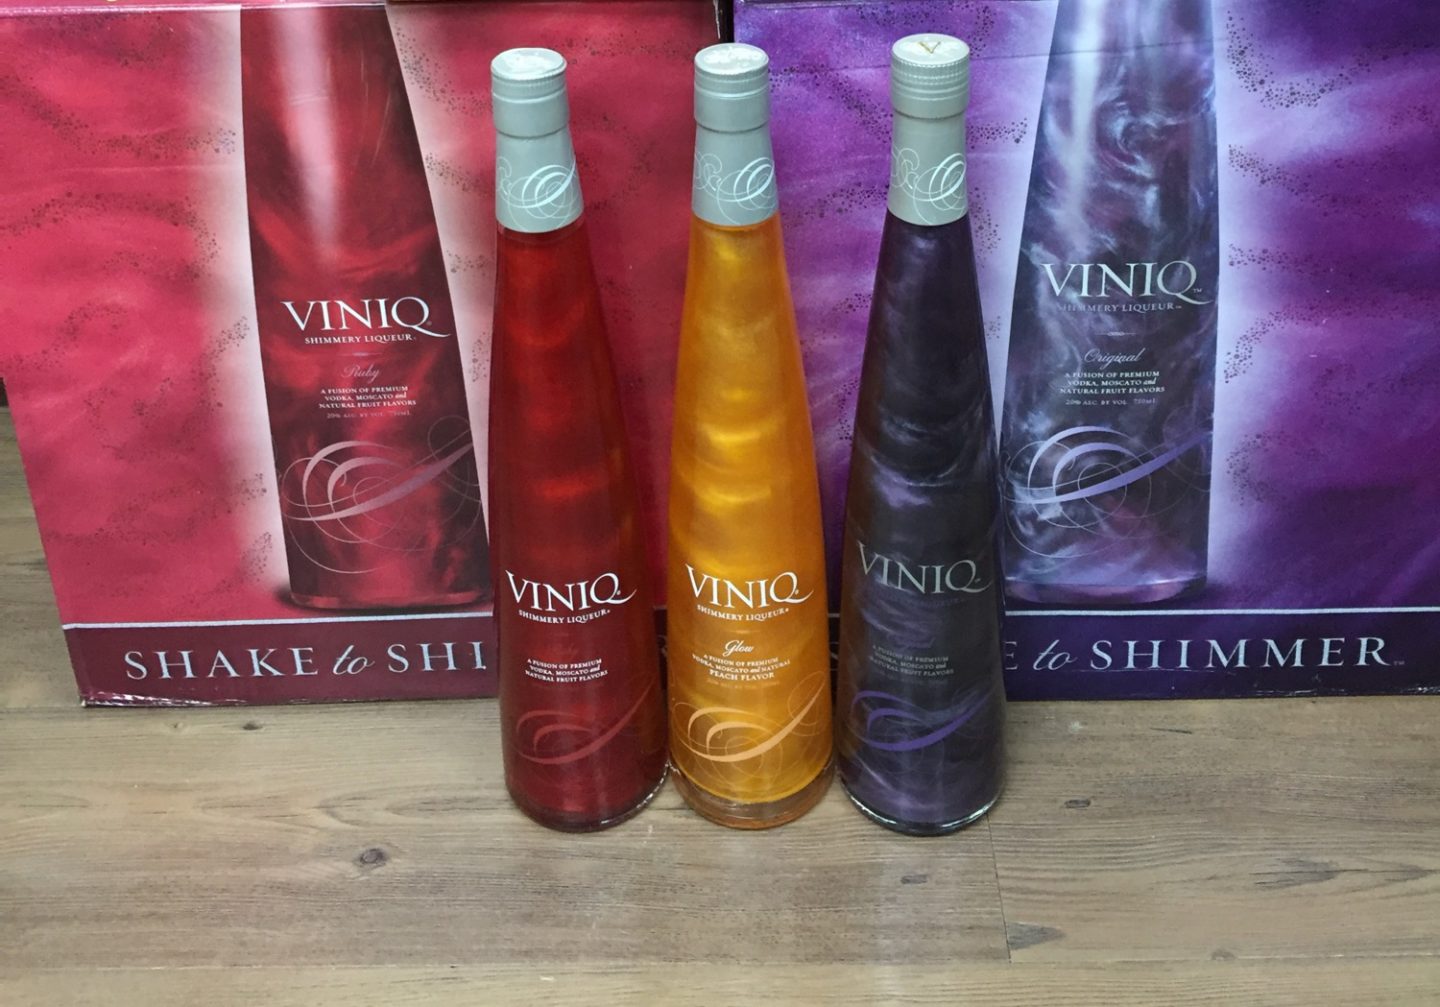 Мерцающий ликёр Виник (Viniq Original Shimmery Liqueur)